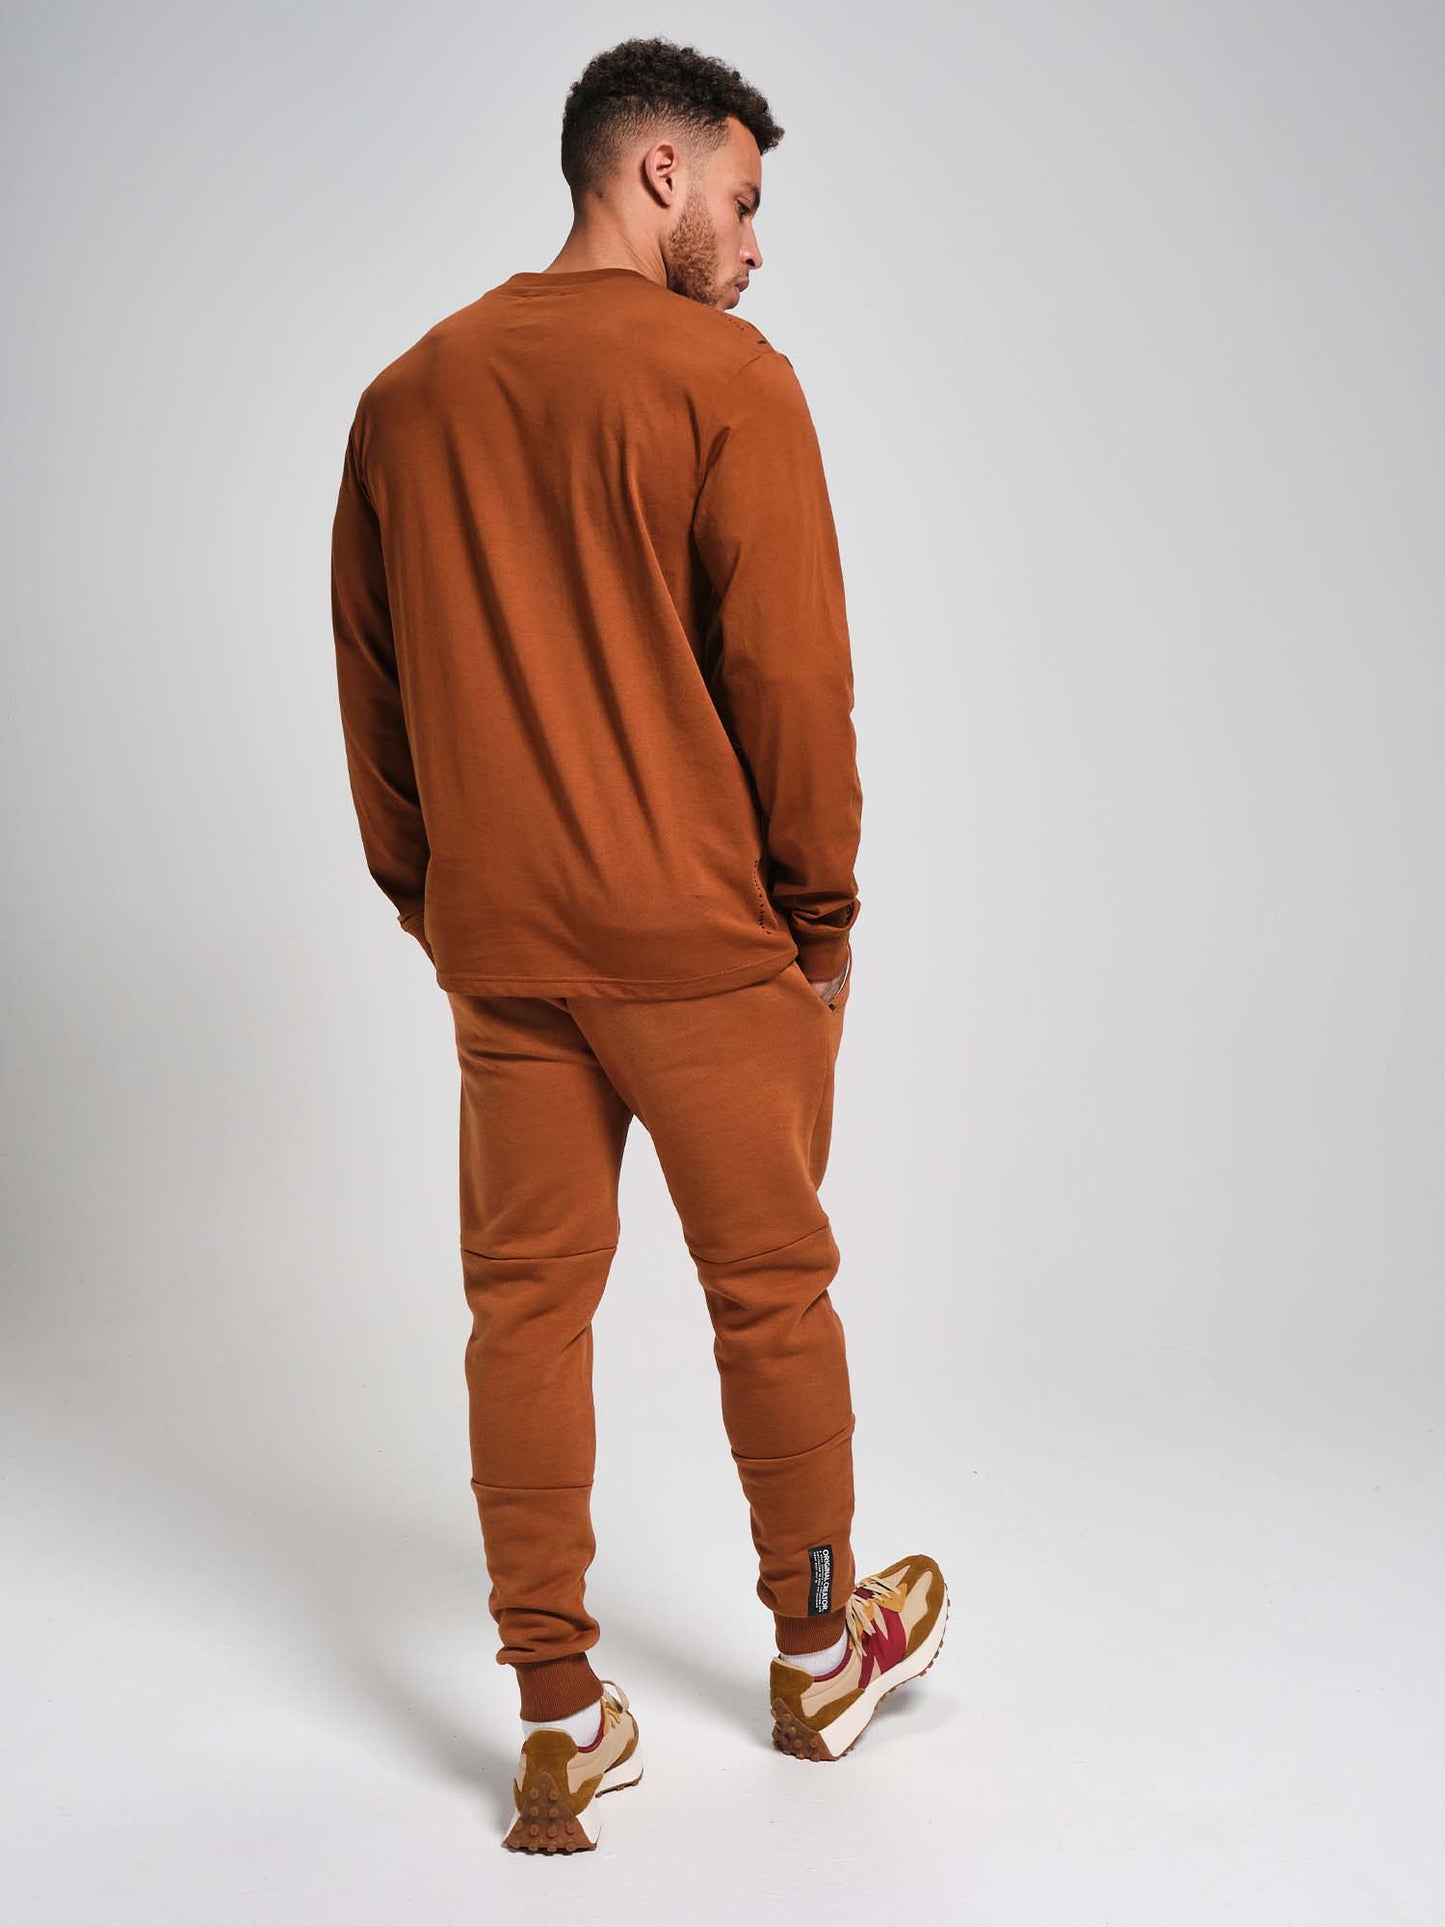 OC. Long Sleeve T-Shirt - Bronze Brown